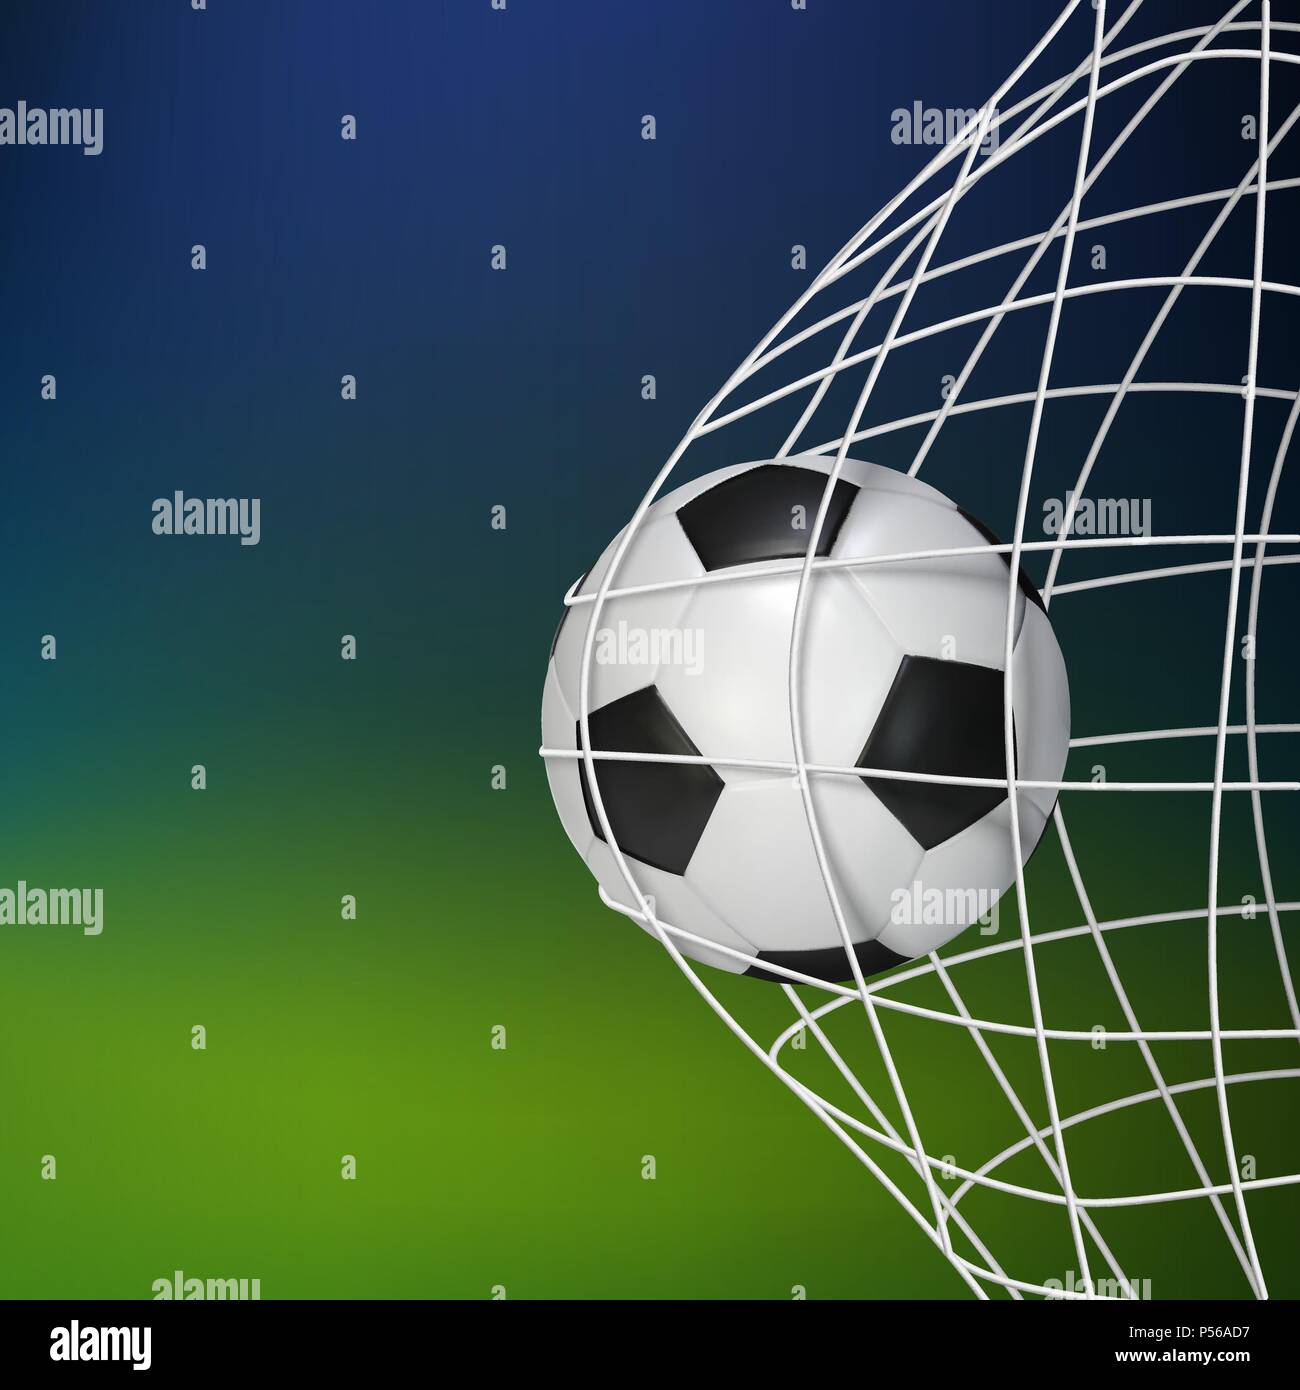 Découpe Dillustration De Ballon De Football Vectoriel PNG , Balle, Football,  Illustration PNG et vecteur pour téléchargement gratuit